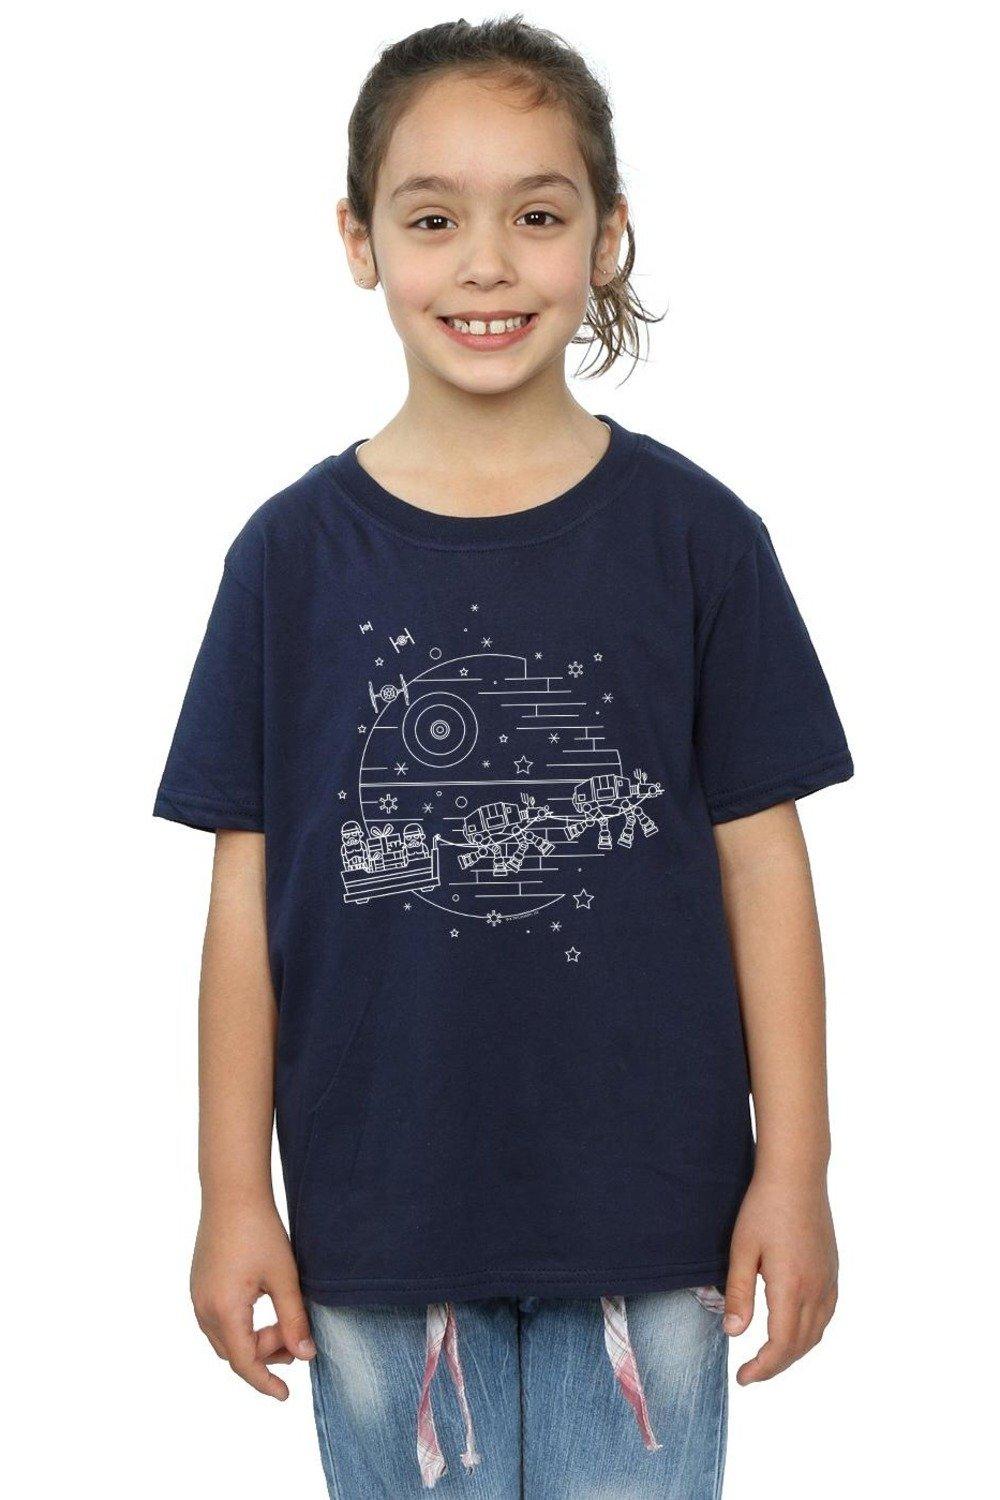 Хлопковая футболка «Звезда Смерти» Star Wars, темно-синий